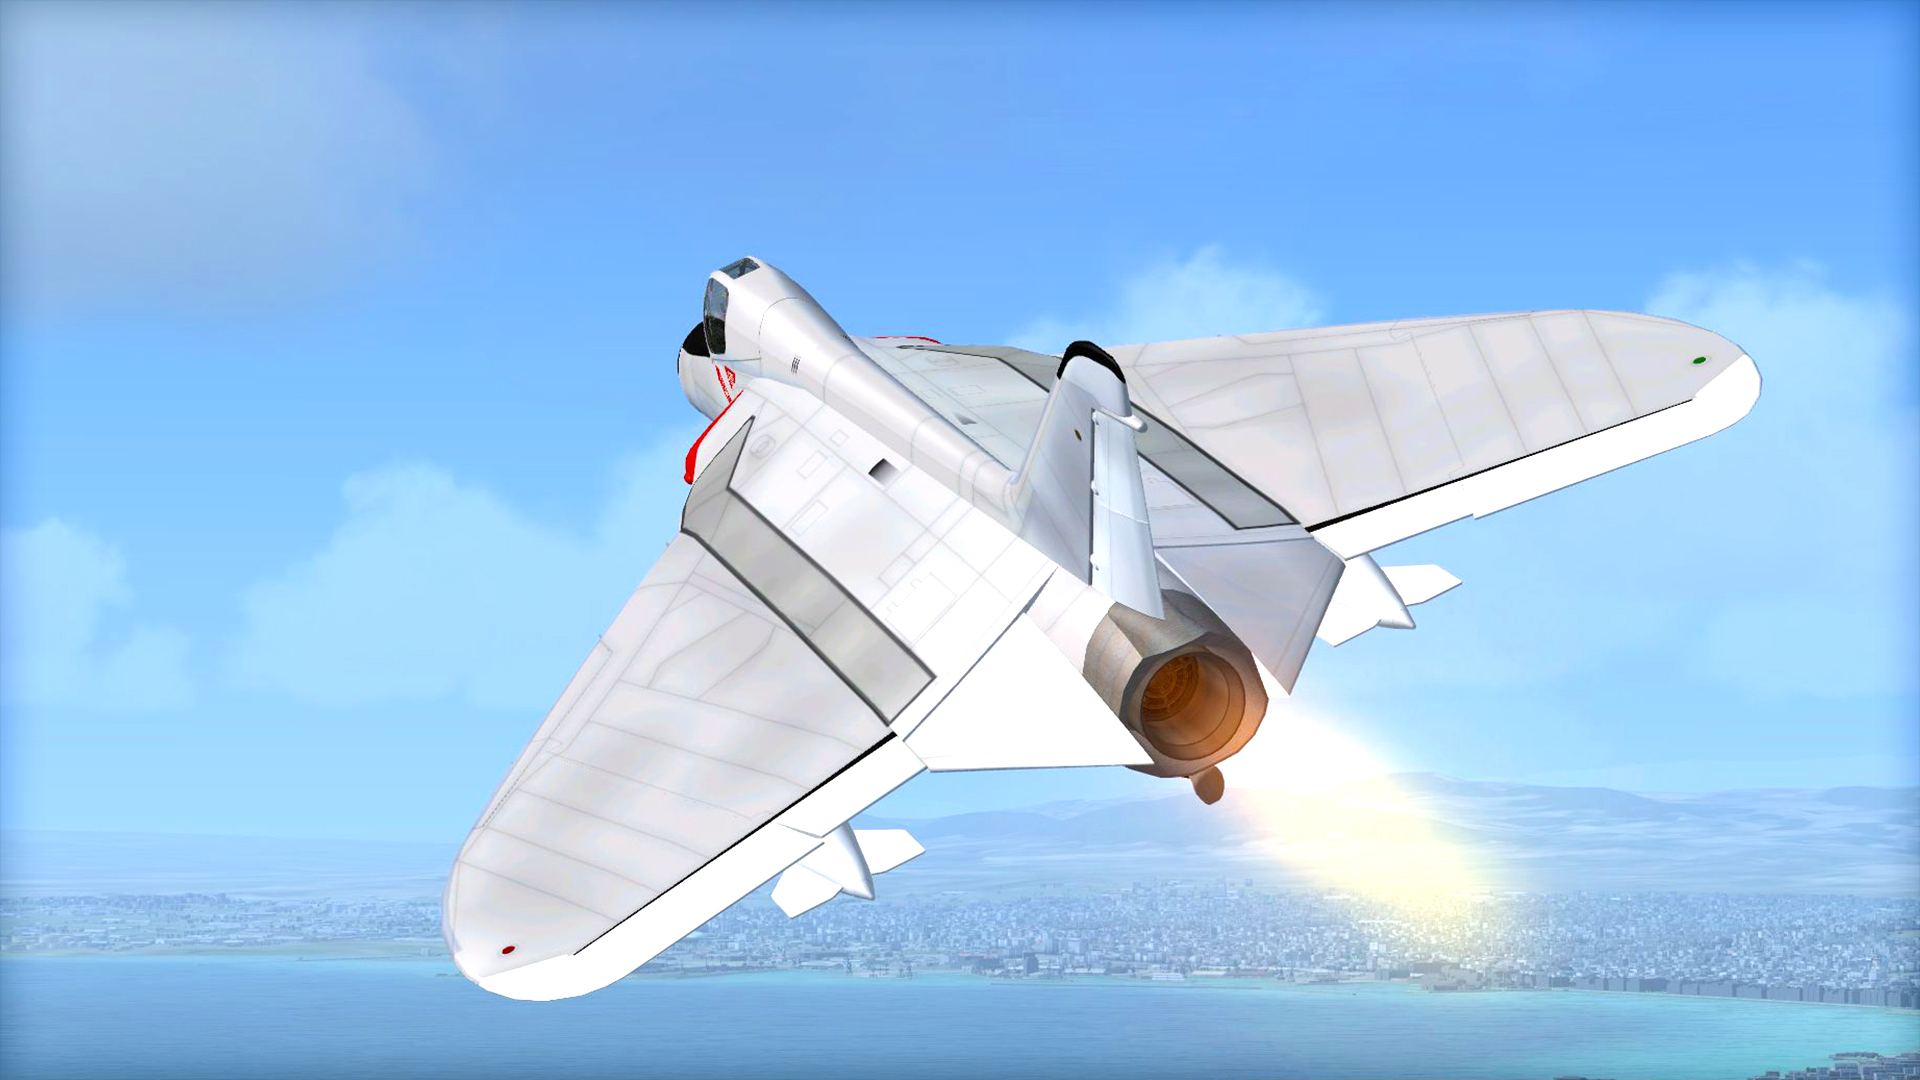 FSX Steam Edition: Aircraft Factory F4U Corsair™ on Steam